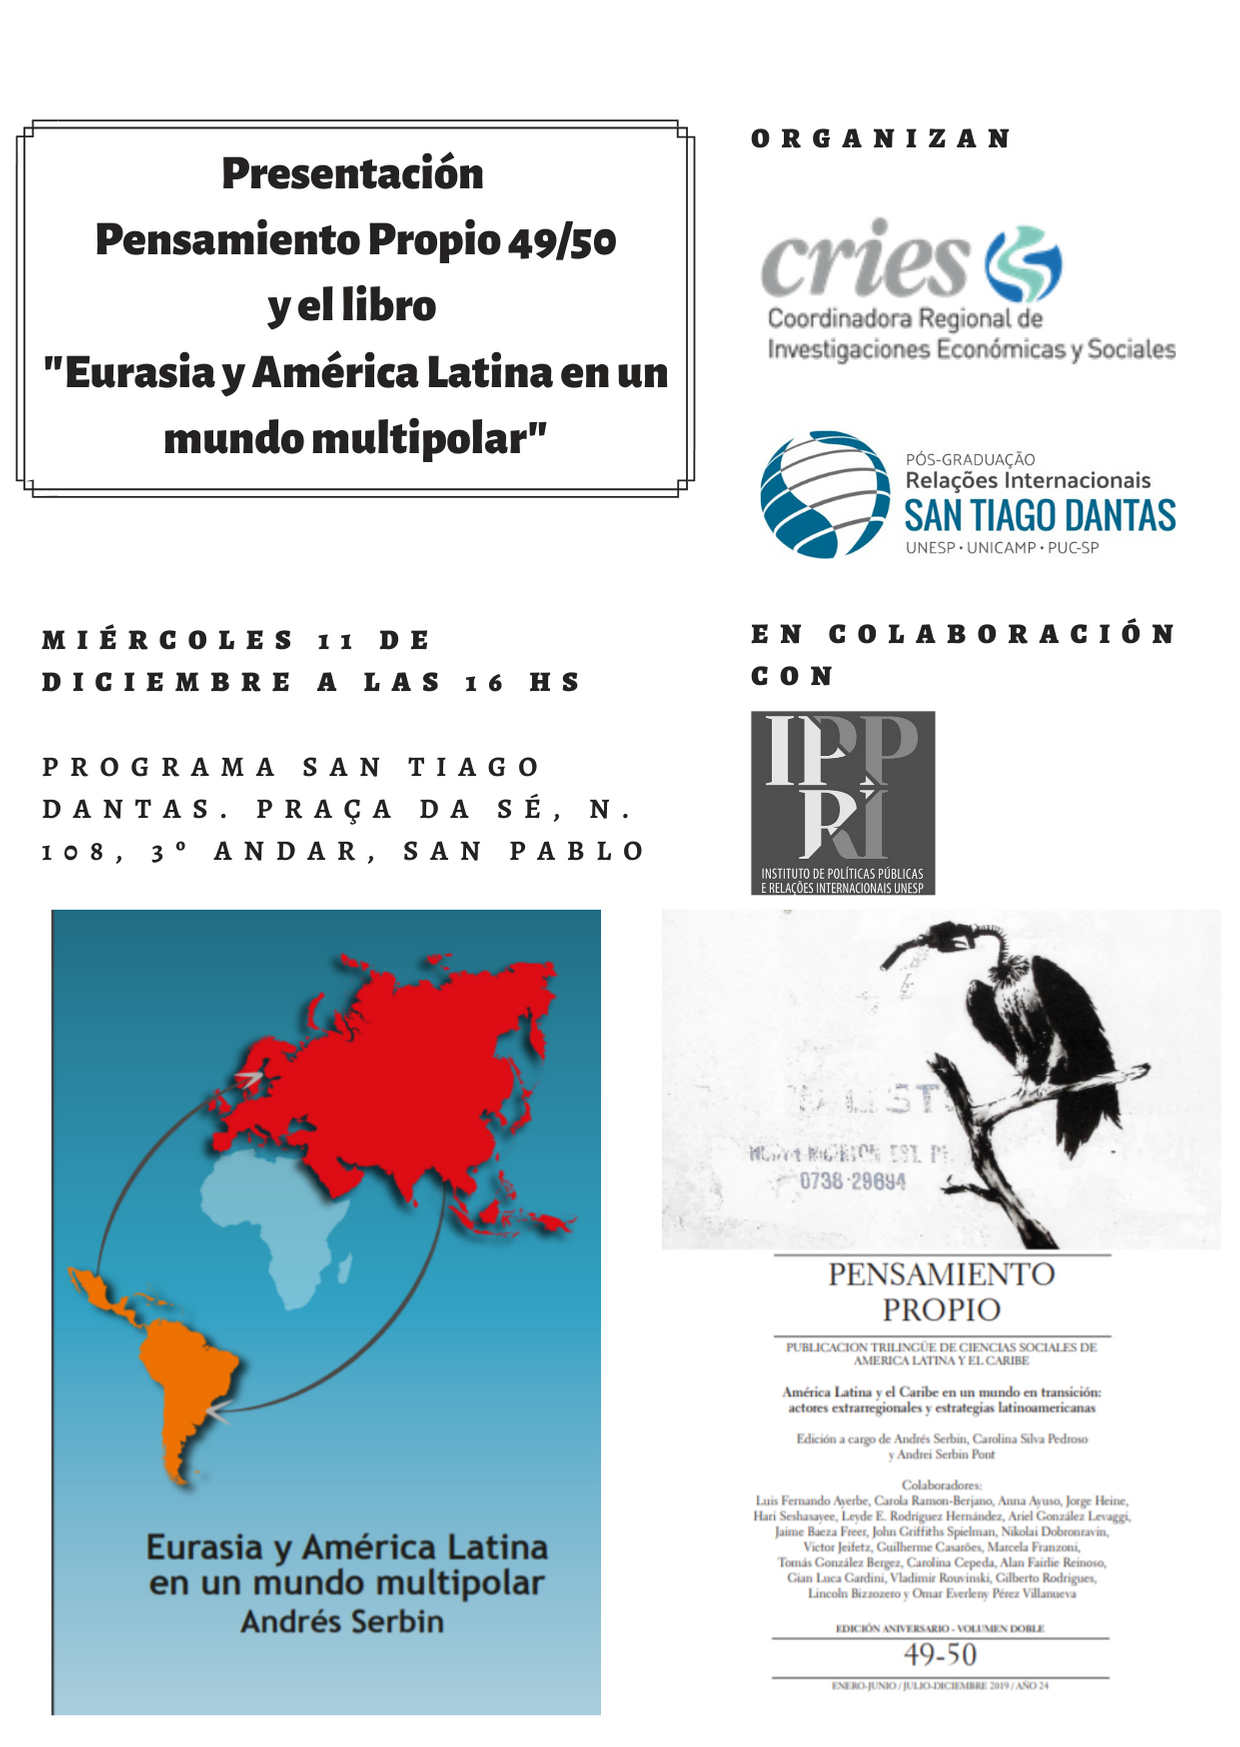 Presentación de Eurasia y América Latina en un mundo multipolar y de Pensamiento Propio en San Pablo – Brasil